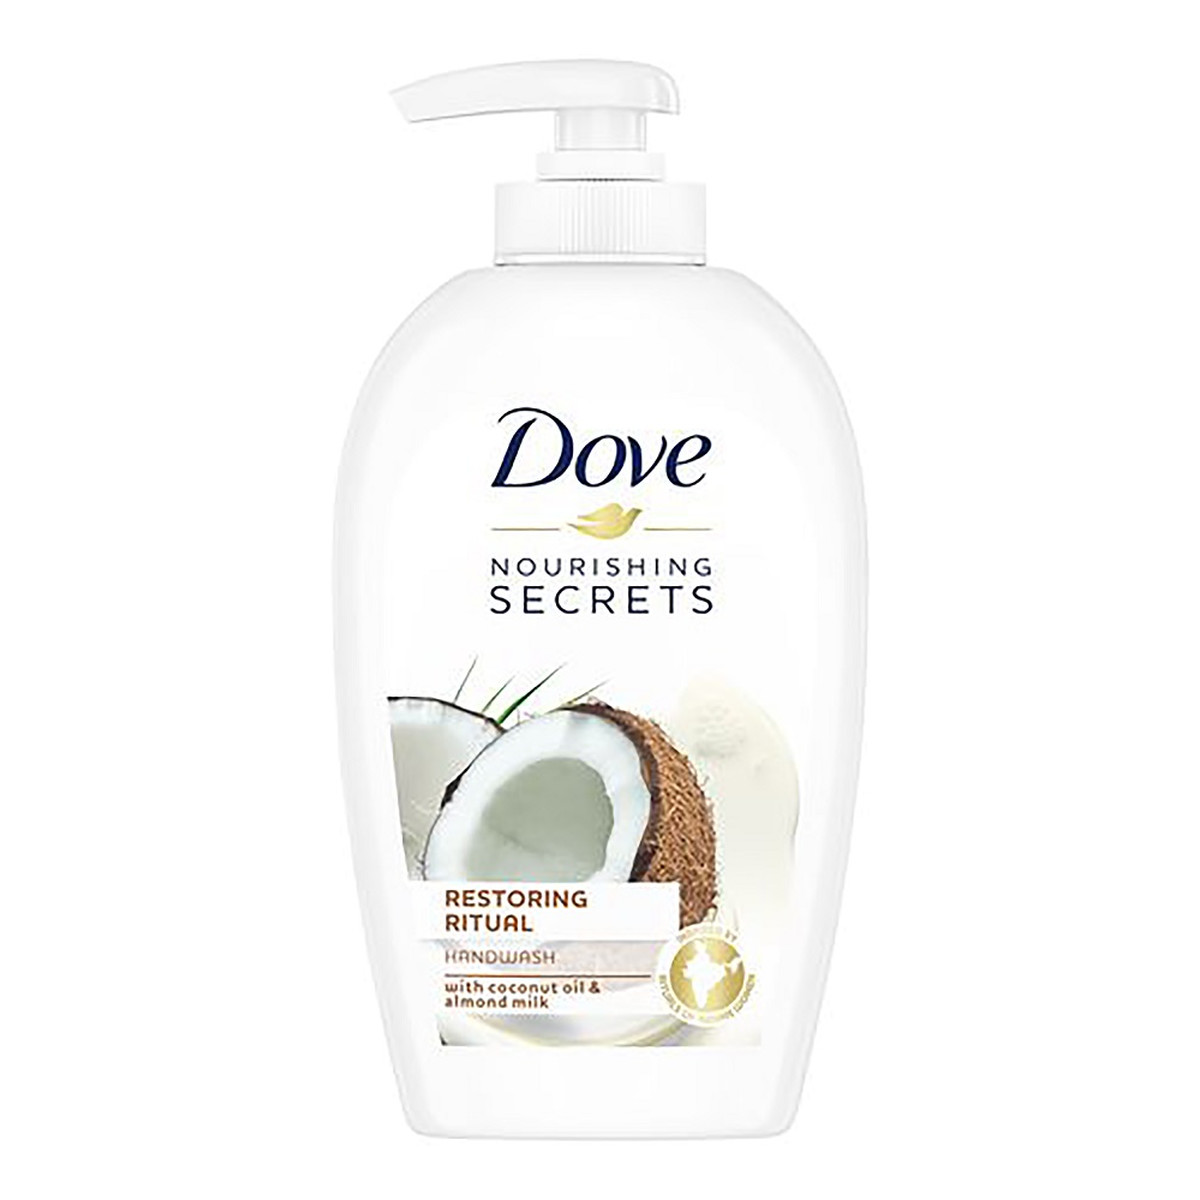 Dove Nourishing Secrets Restoring Ritual Mydło do rąk w płynie coconut oil & almond milk 250ml